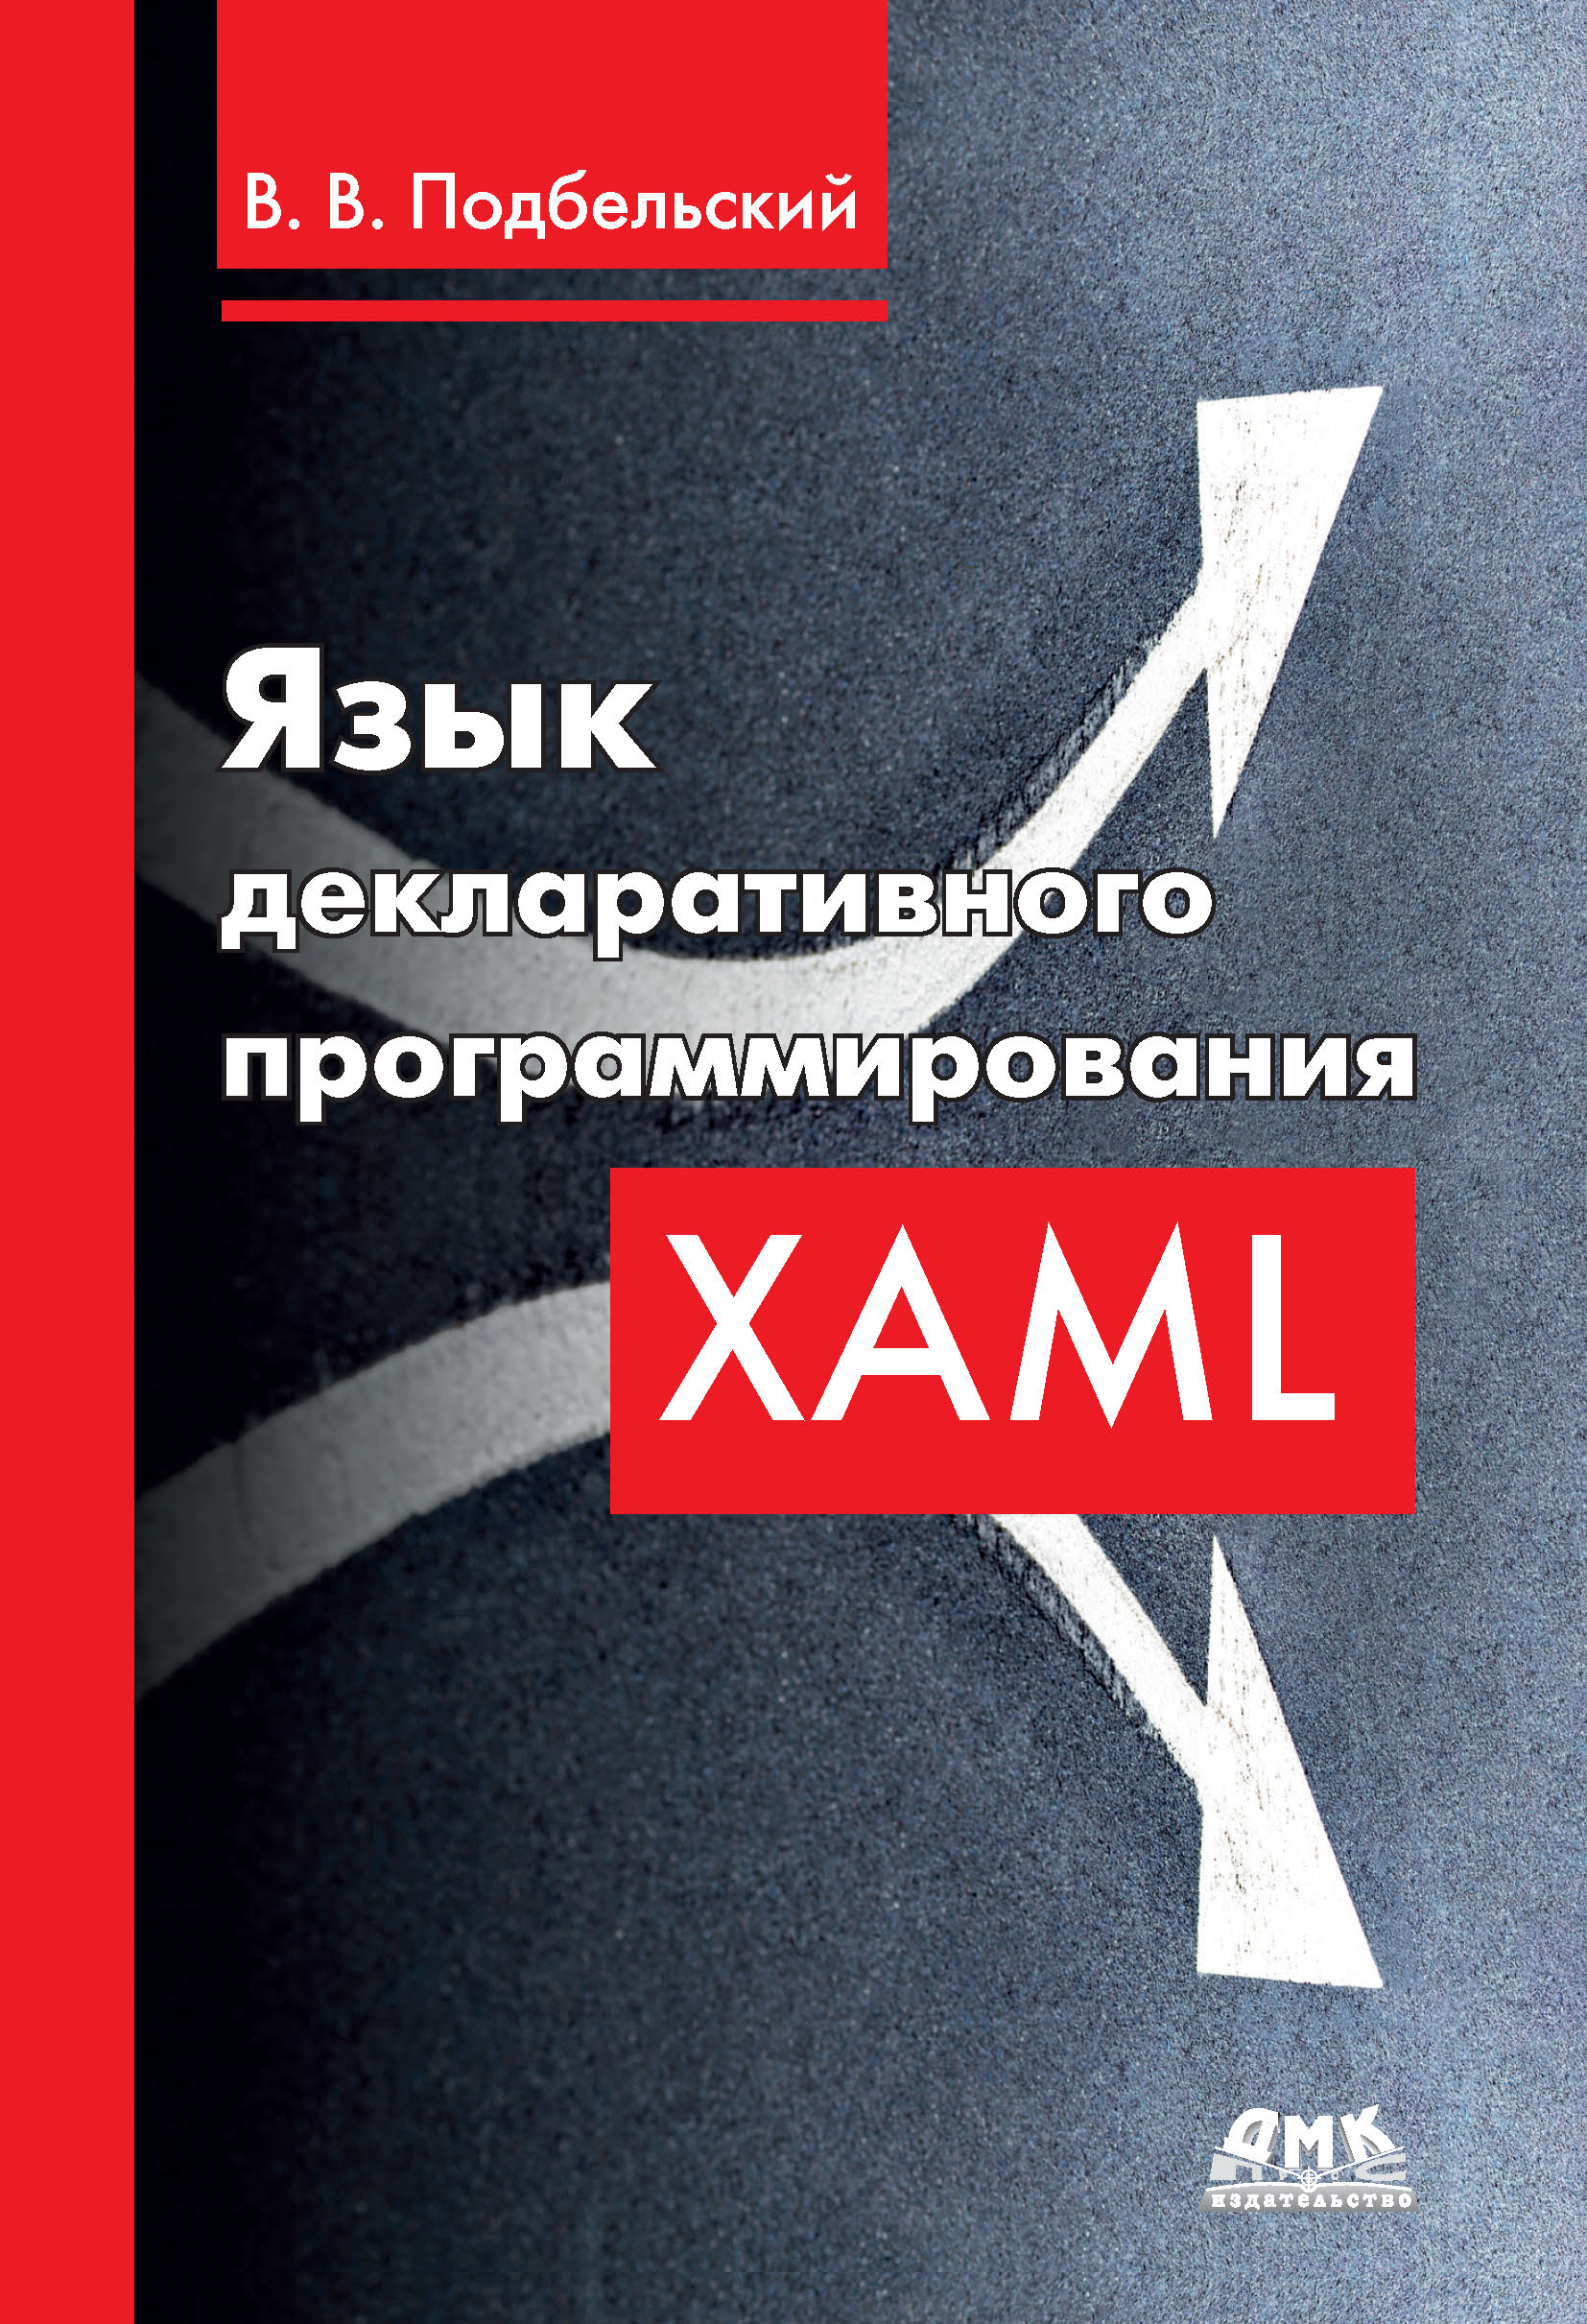 Книга  Язык декларативного программирования XAML созданная Вадим Валериевич Подбельский может относится к жанру программирование. Стоимость электронной книги Язык декларативного программирования XAML с идентификатором 48411223 составляет 590.00 руб.